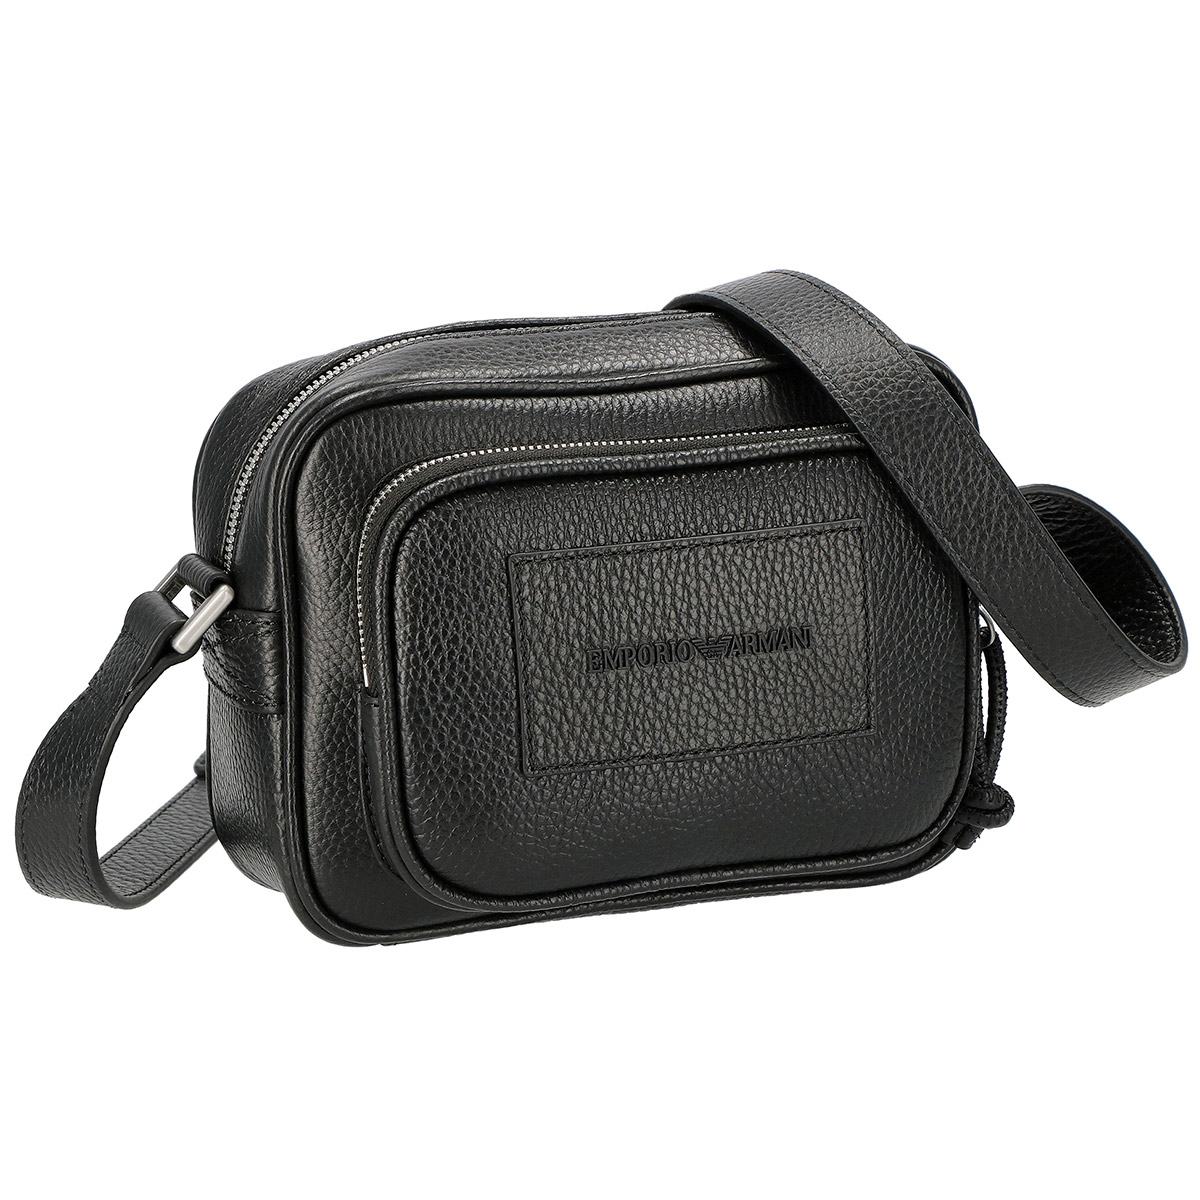 EMPORIO ARMANI: monogram belt bag - Black  Emporio Armani belt bag  Y4O372Y142V online at